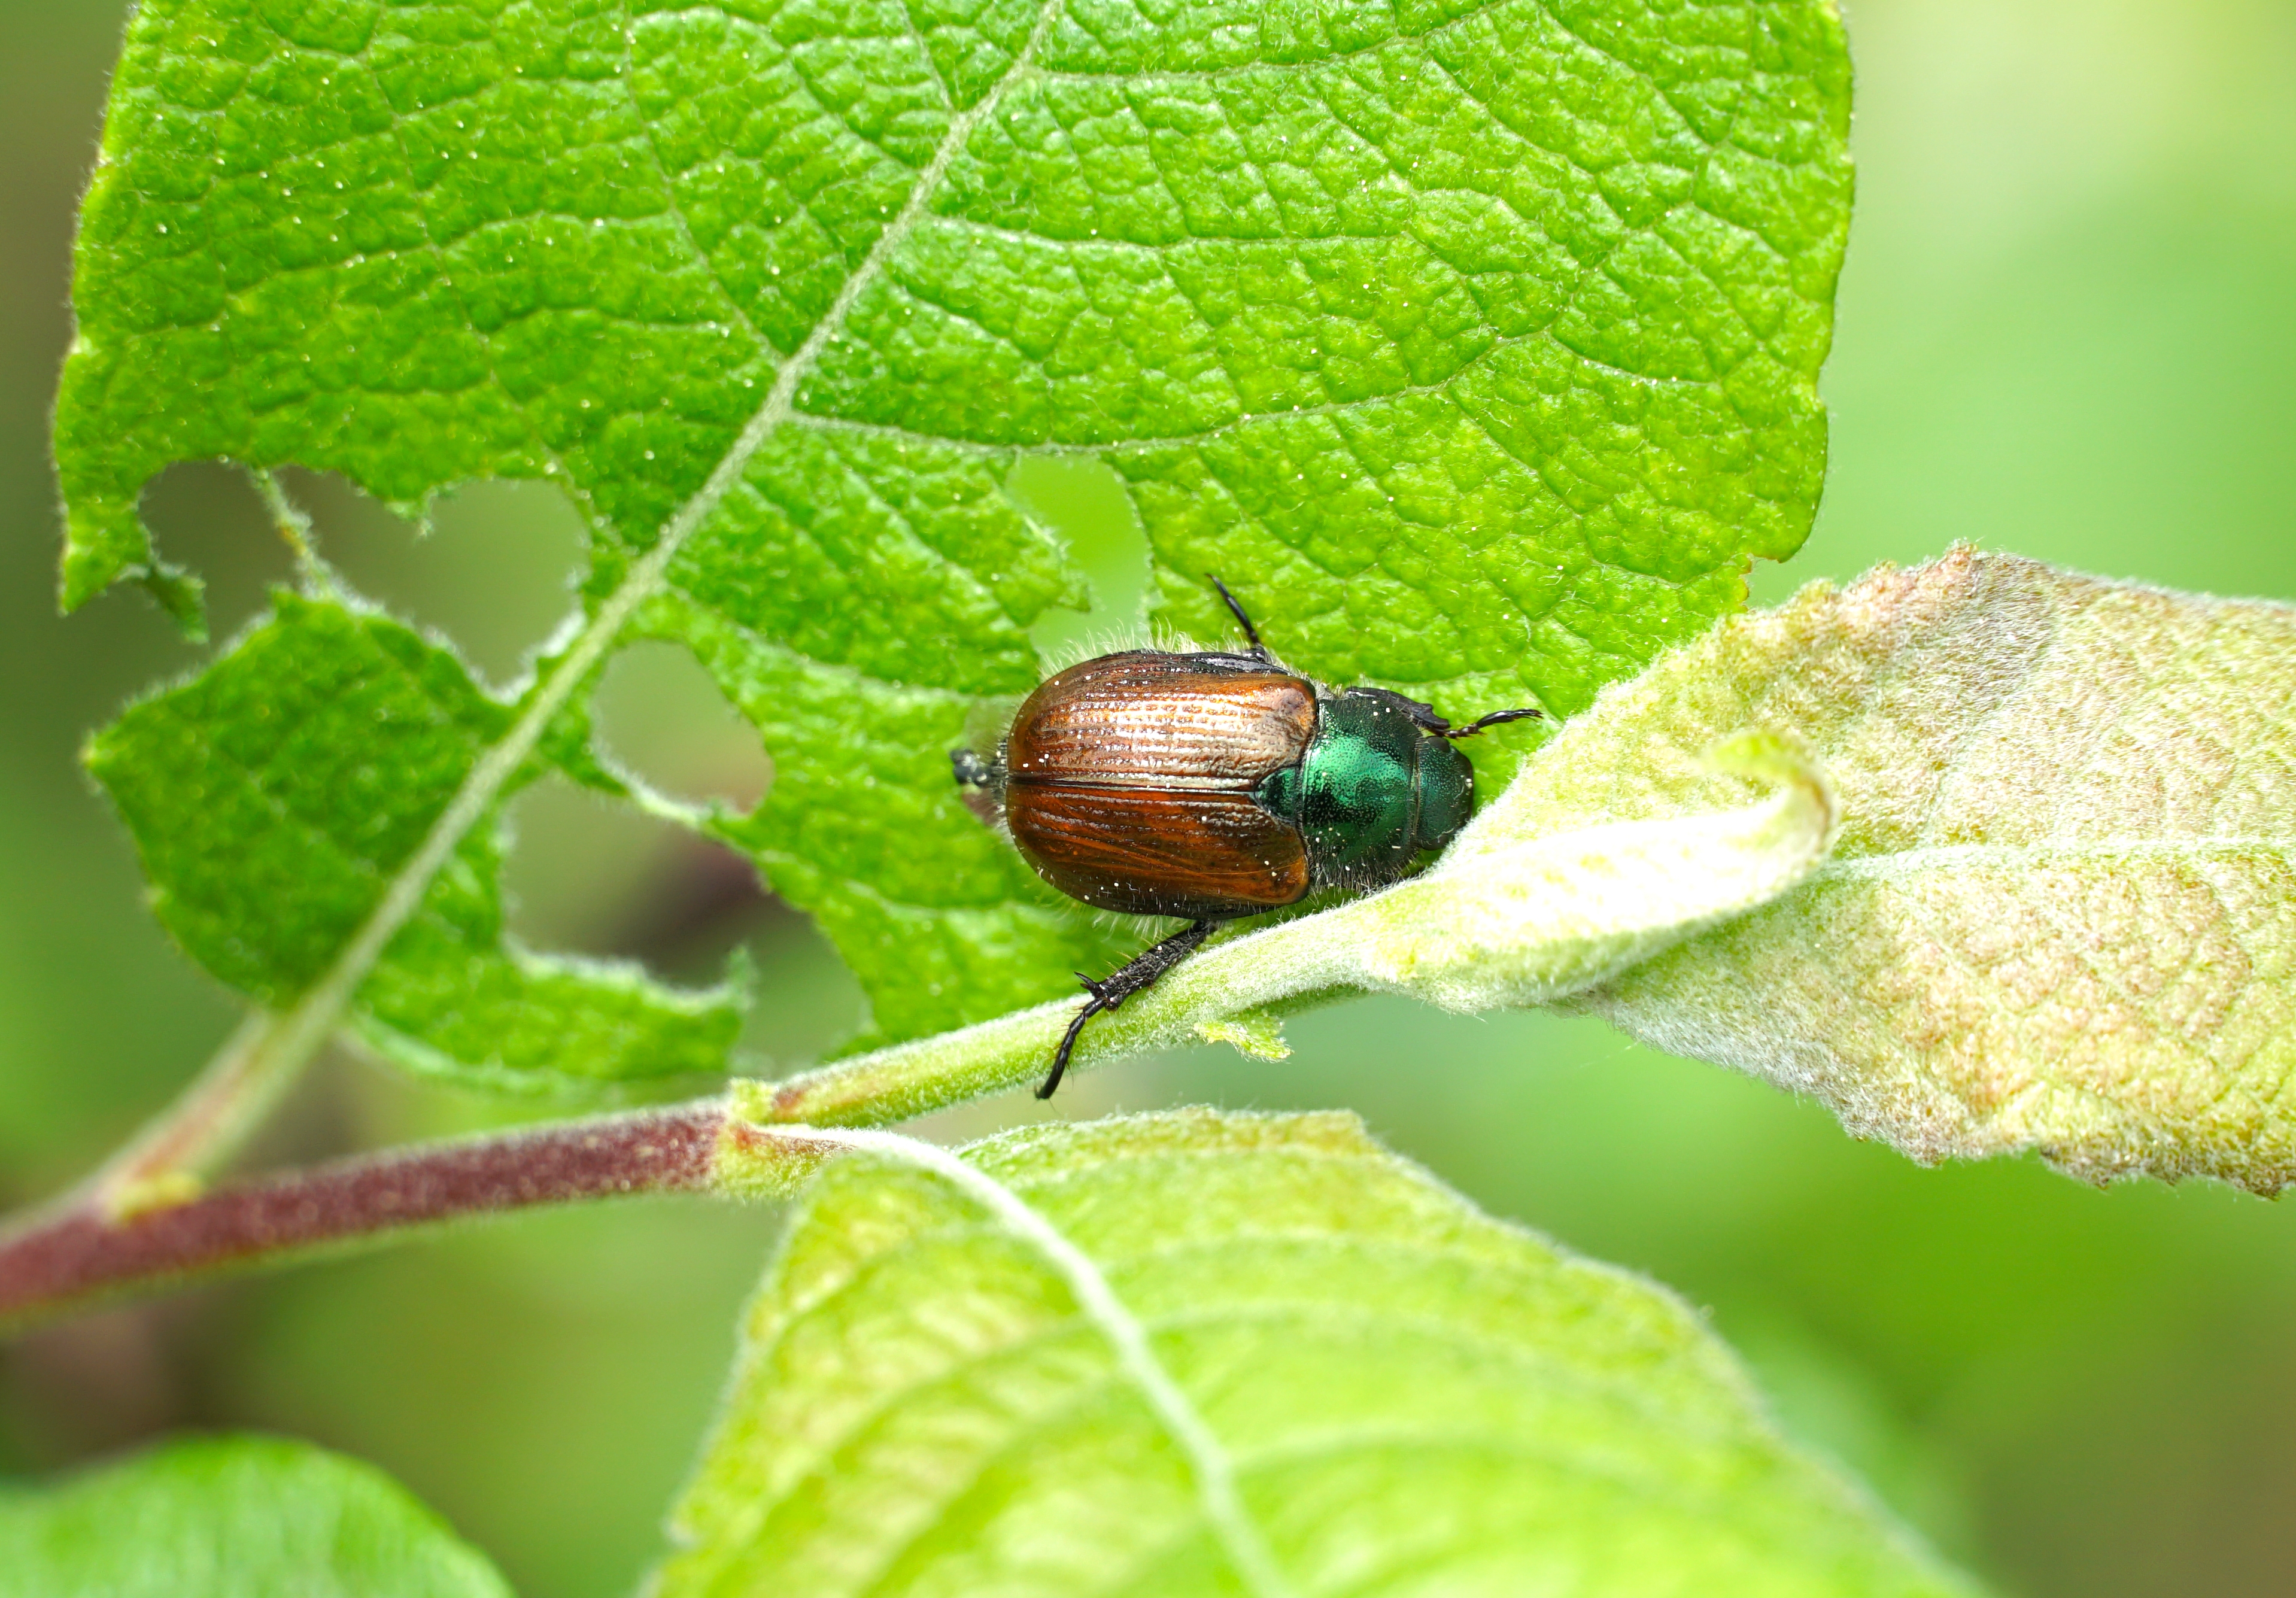 A Japanese beetle on an apple tree leaf